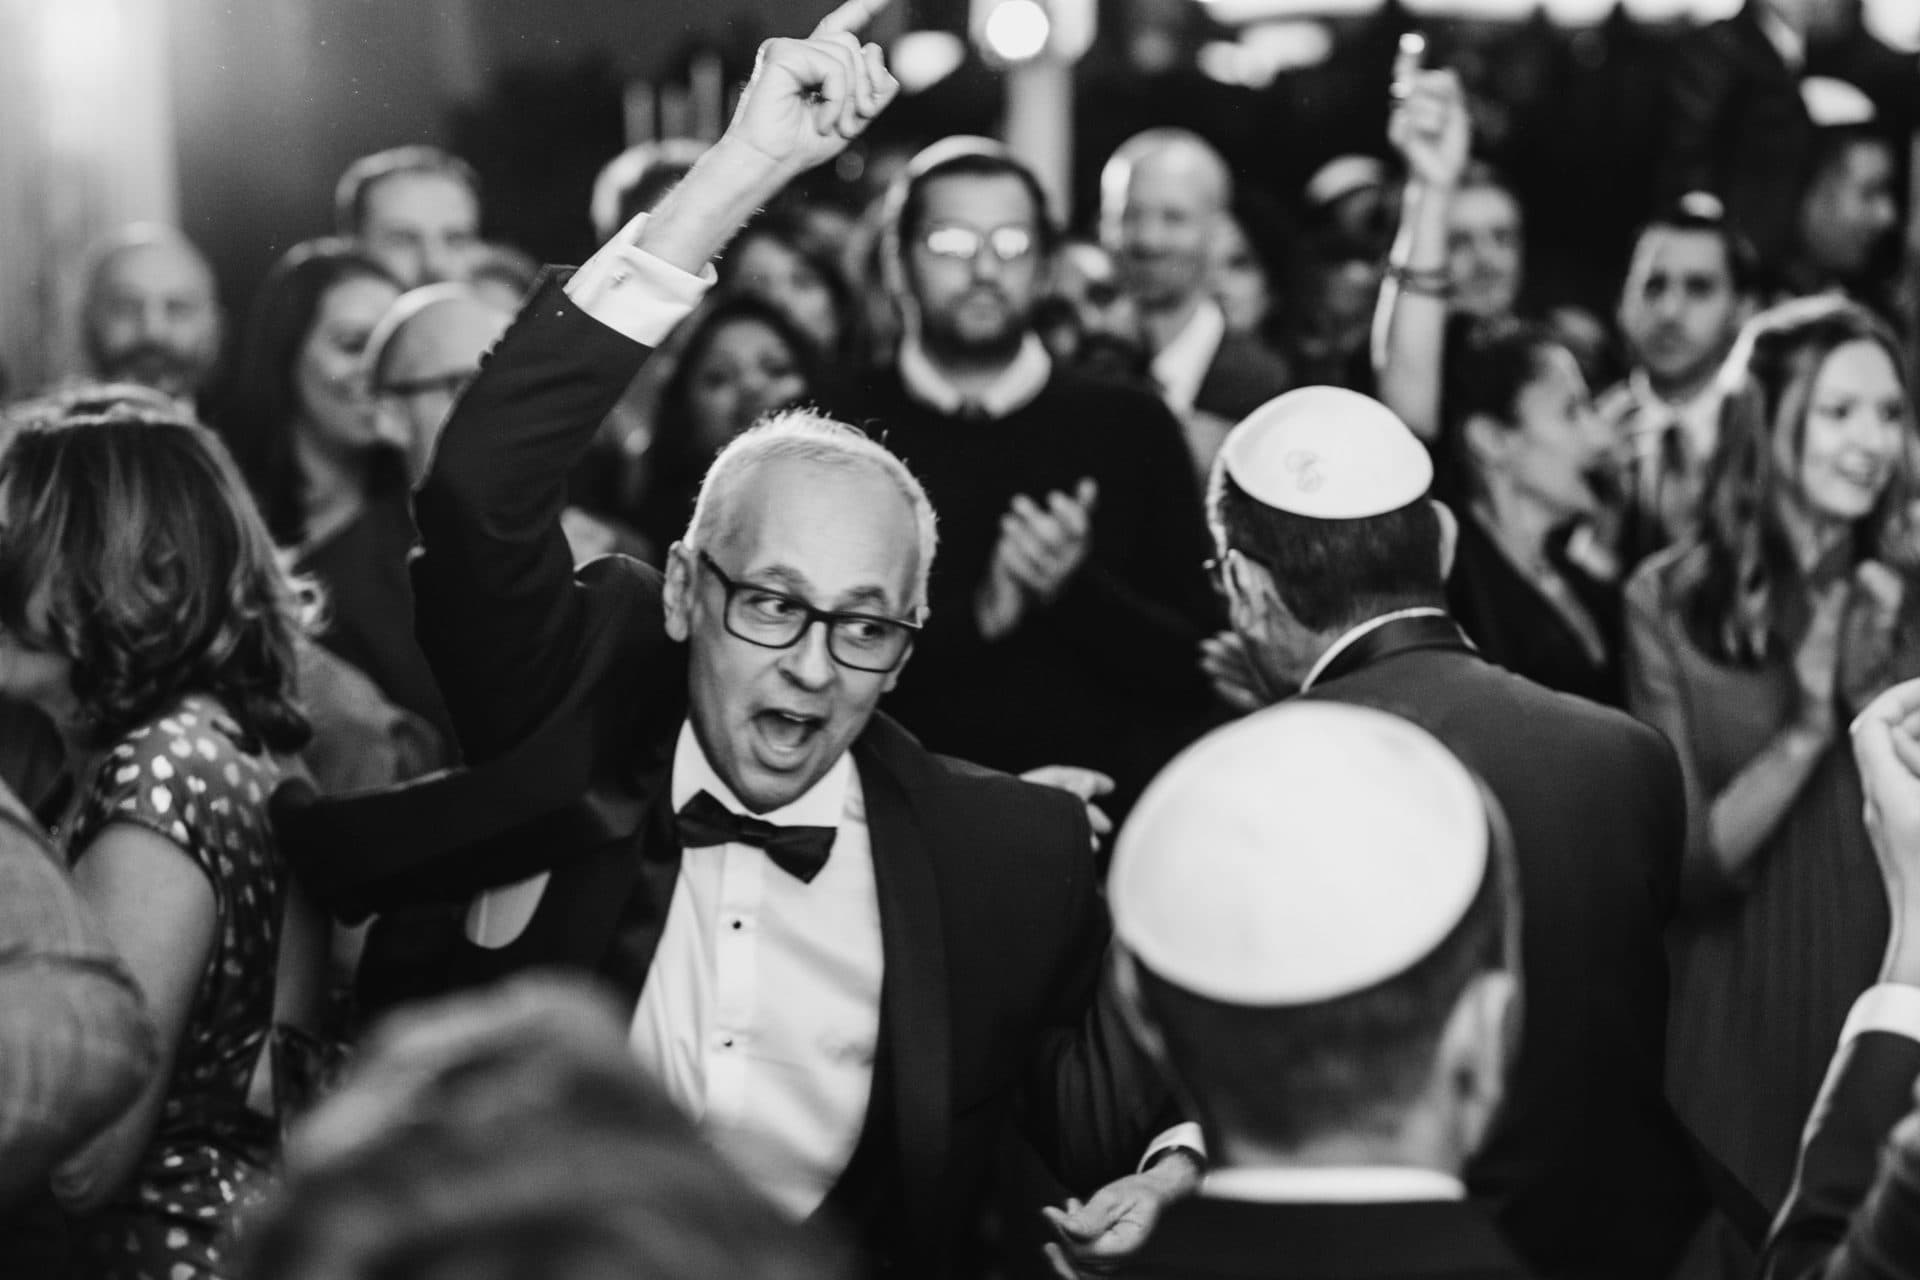 Photographe profesionnel de bar mitzvah et de soirée juive